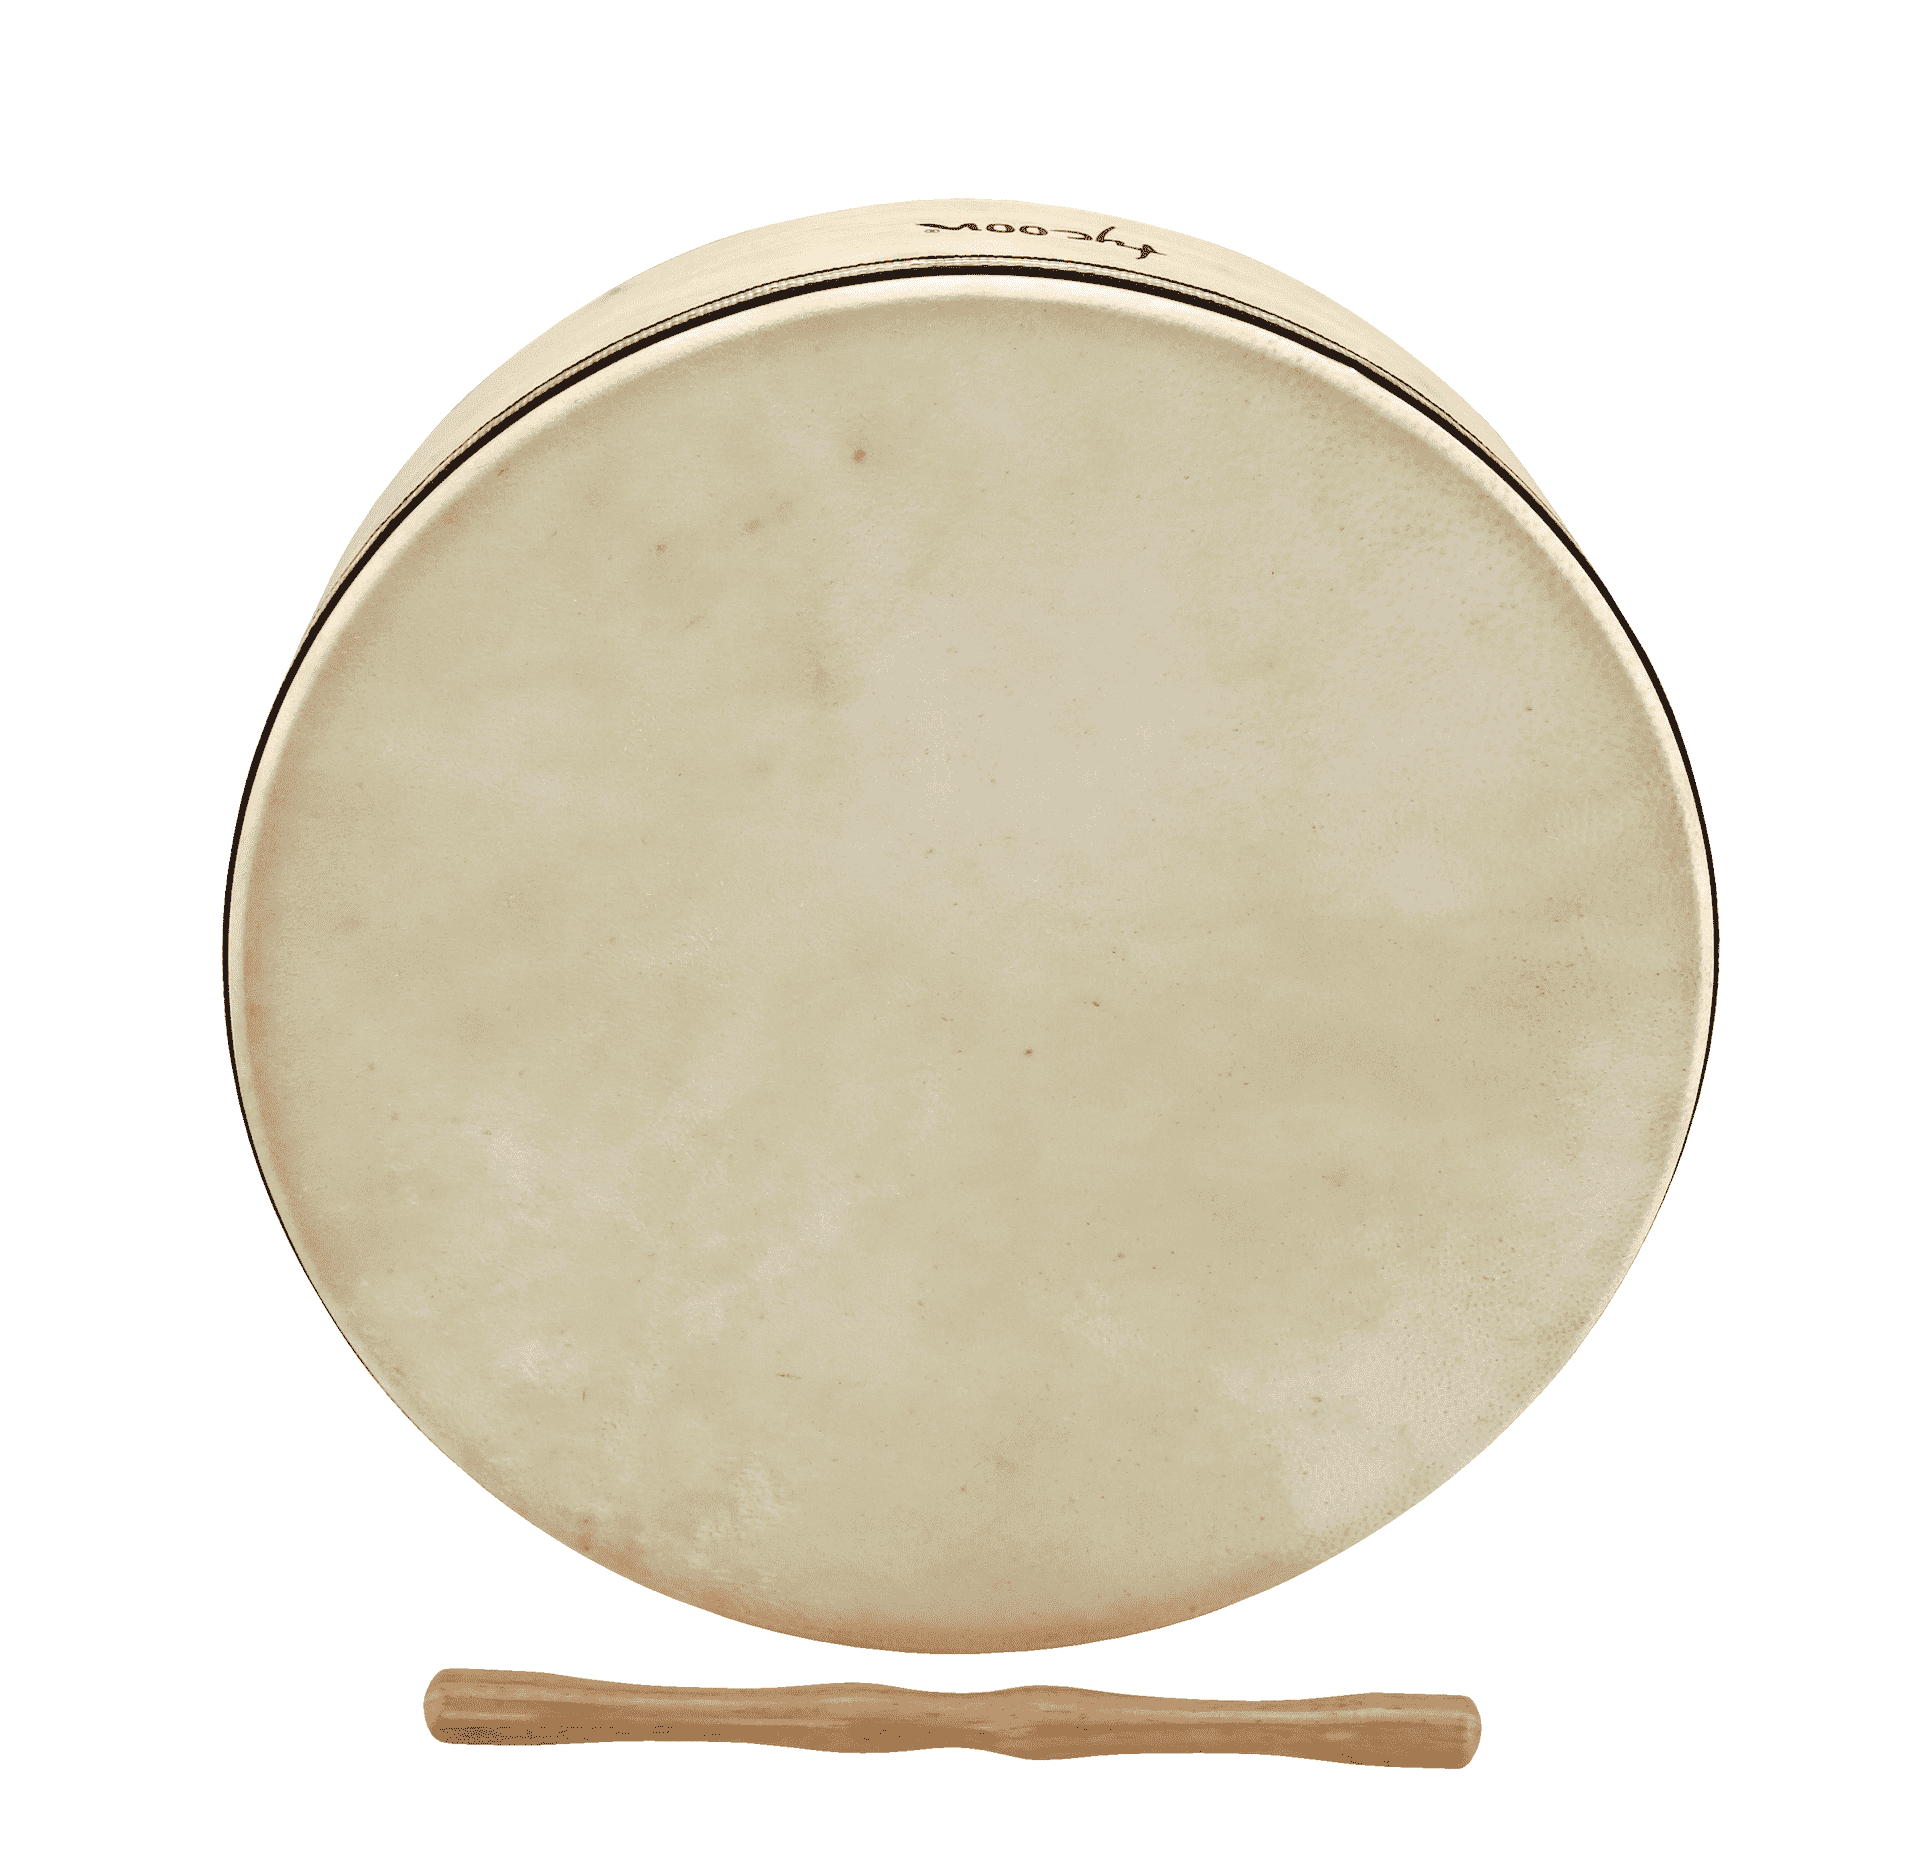 TYCOON TBFD-14 - Рамочный барабан (бубен) 14"(35см), корпус: дуб, цвет: натуральный